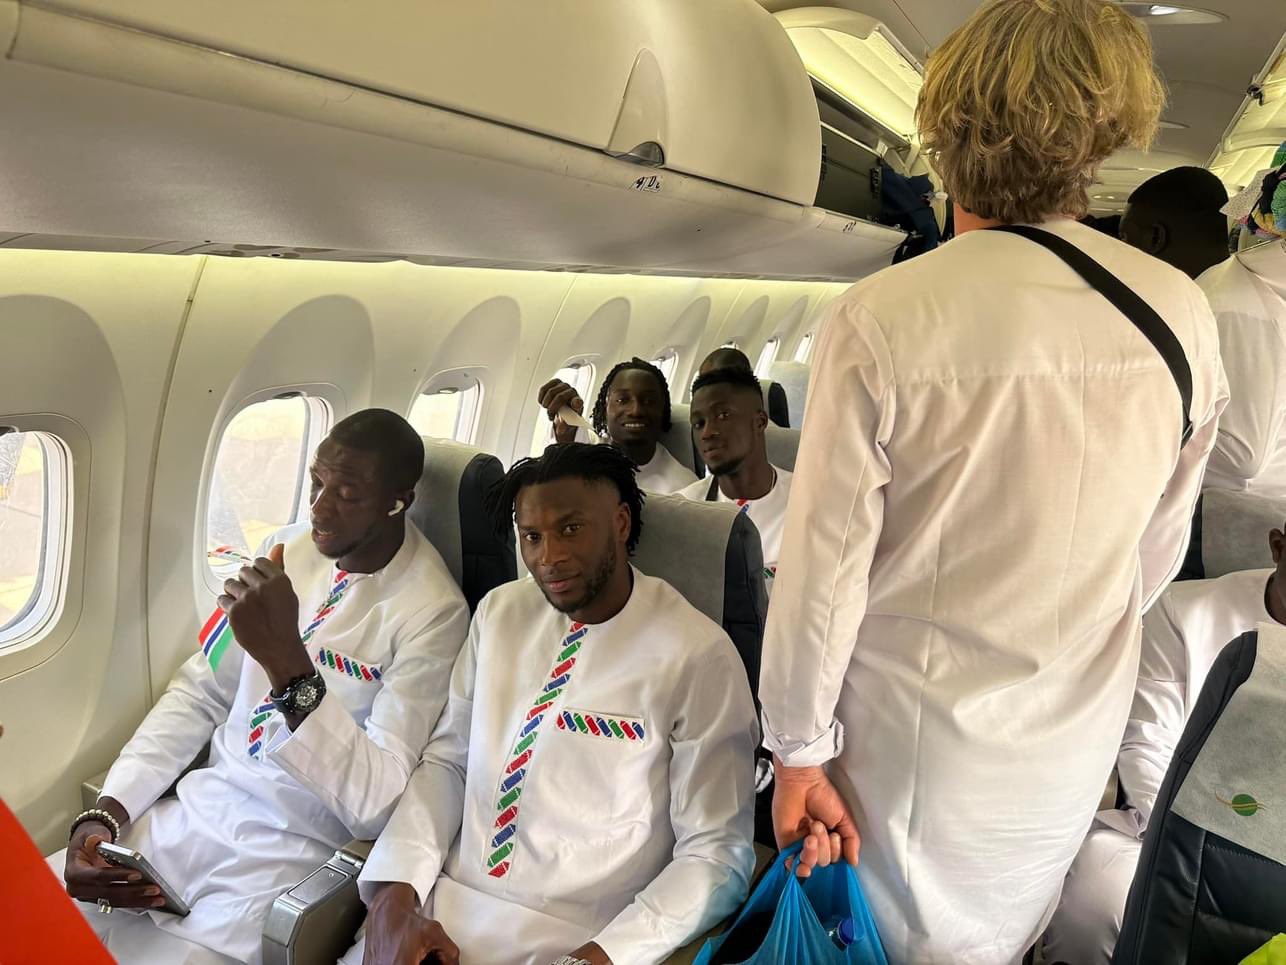  Joueurs évanouis, atterrissage d'urgence, le terrible voyage de la Gambie